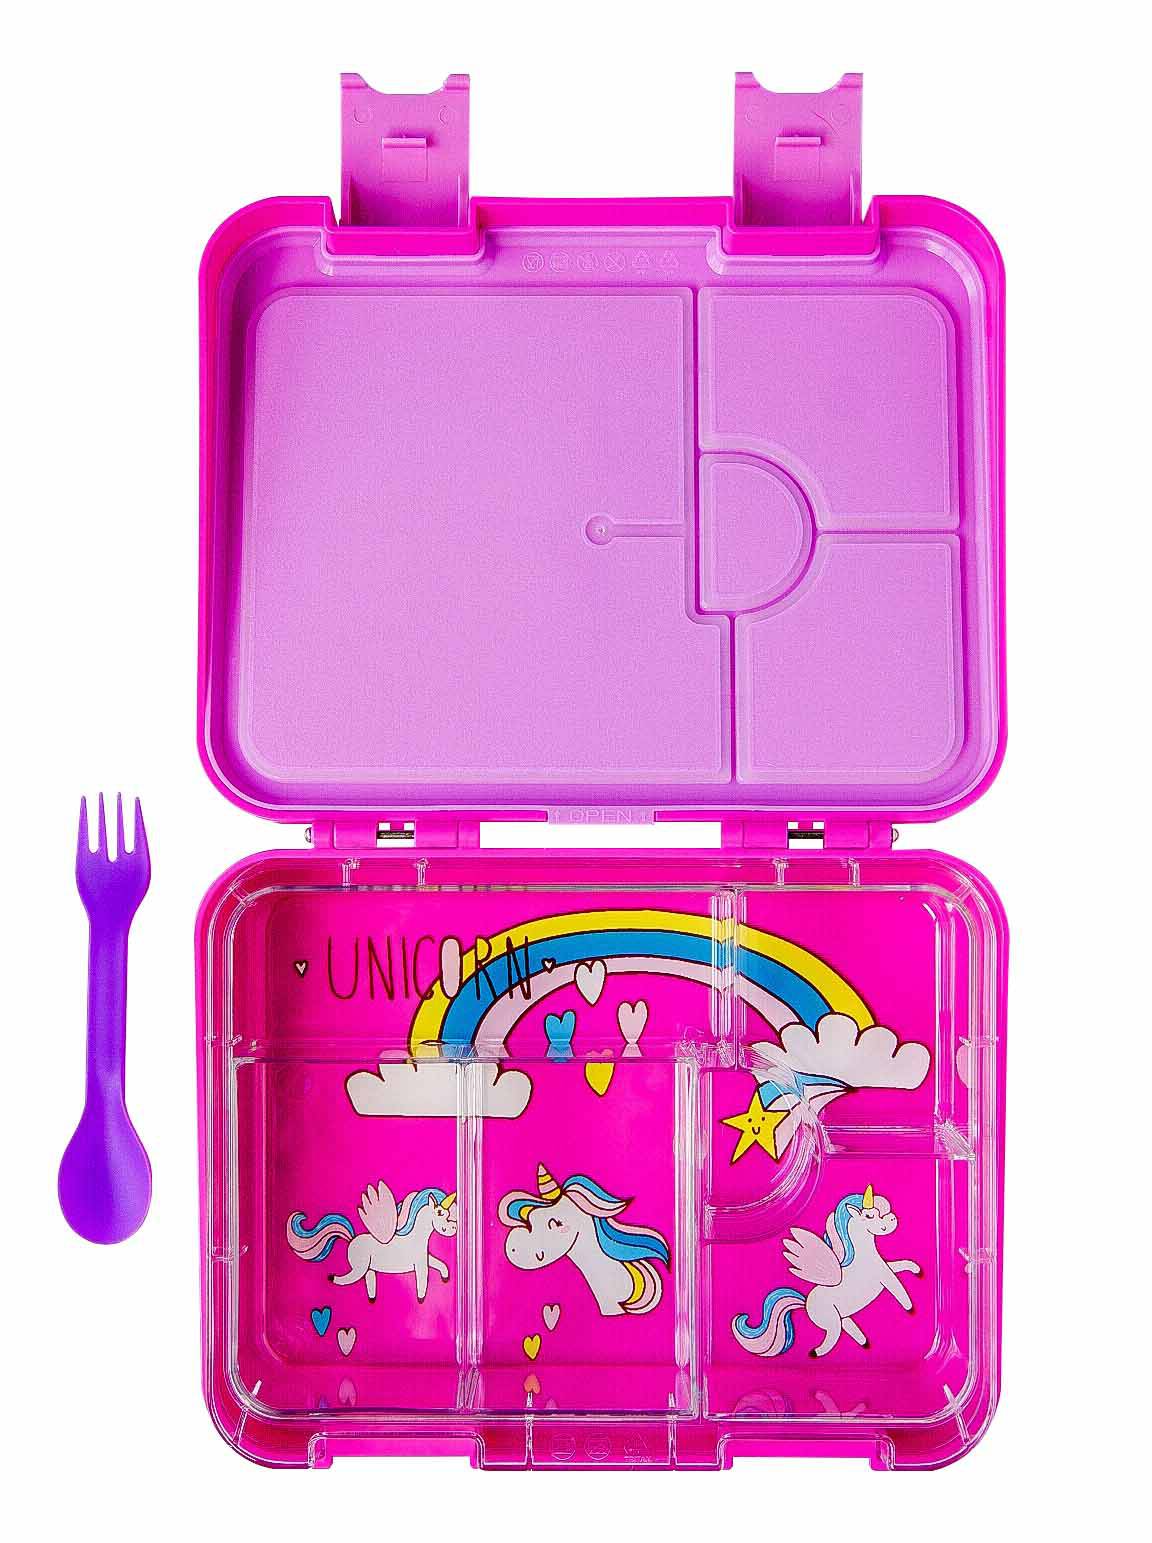 Unicorn Lunch Box Leakproof inside